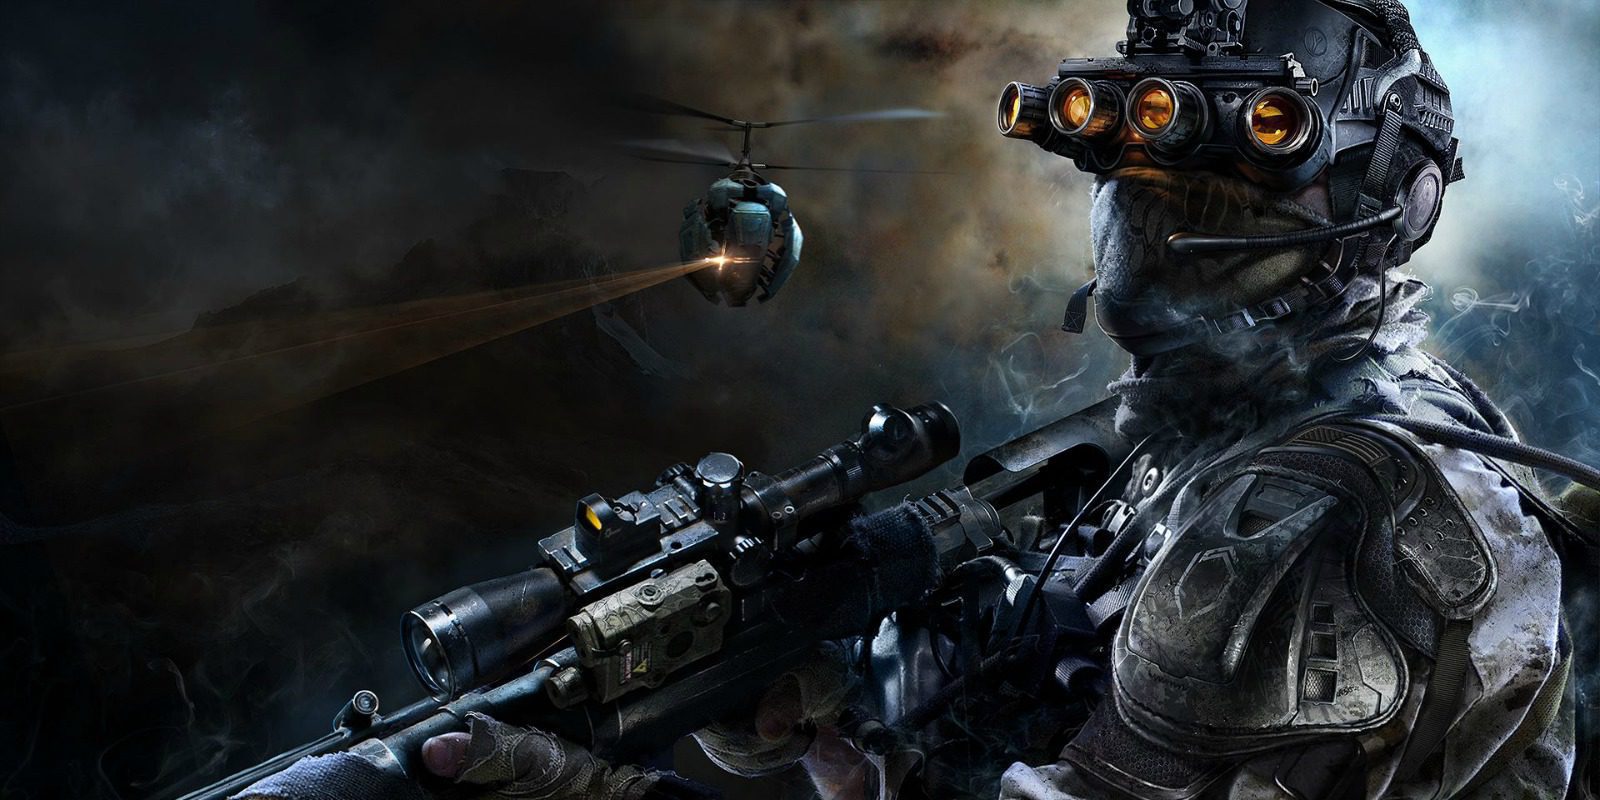 Análisis de 'Sniper Ghost Warrior 3' para PS4